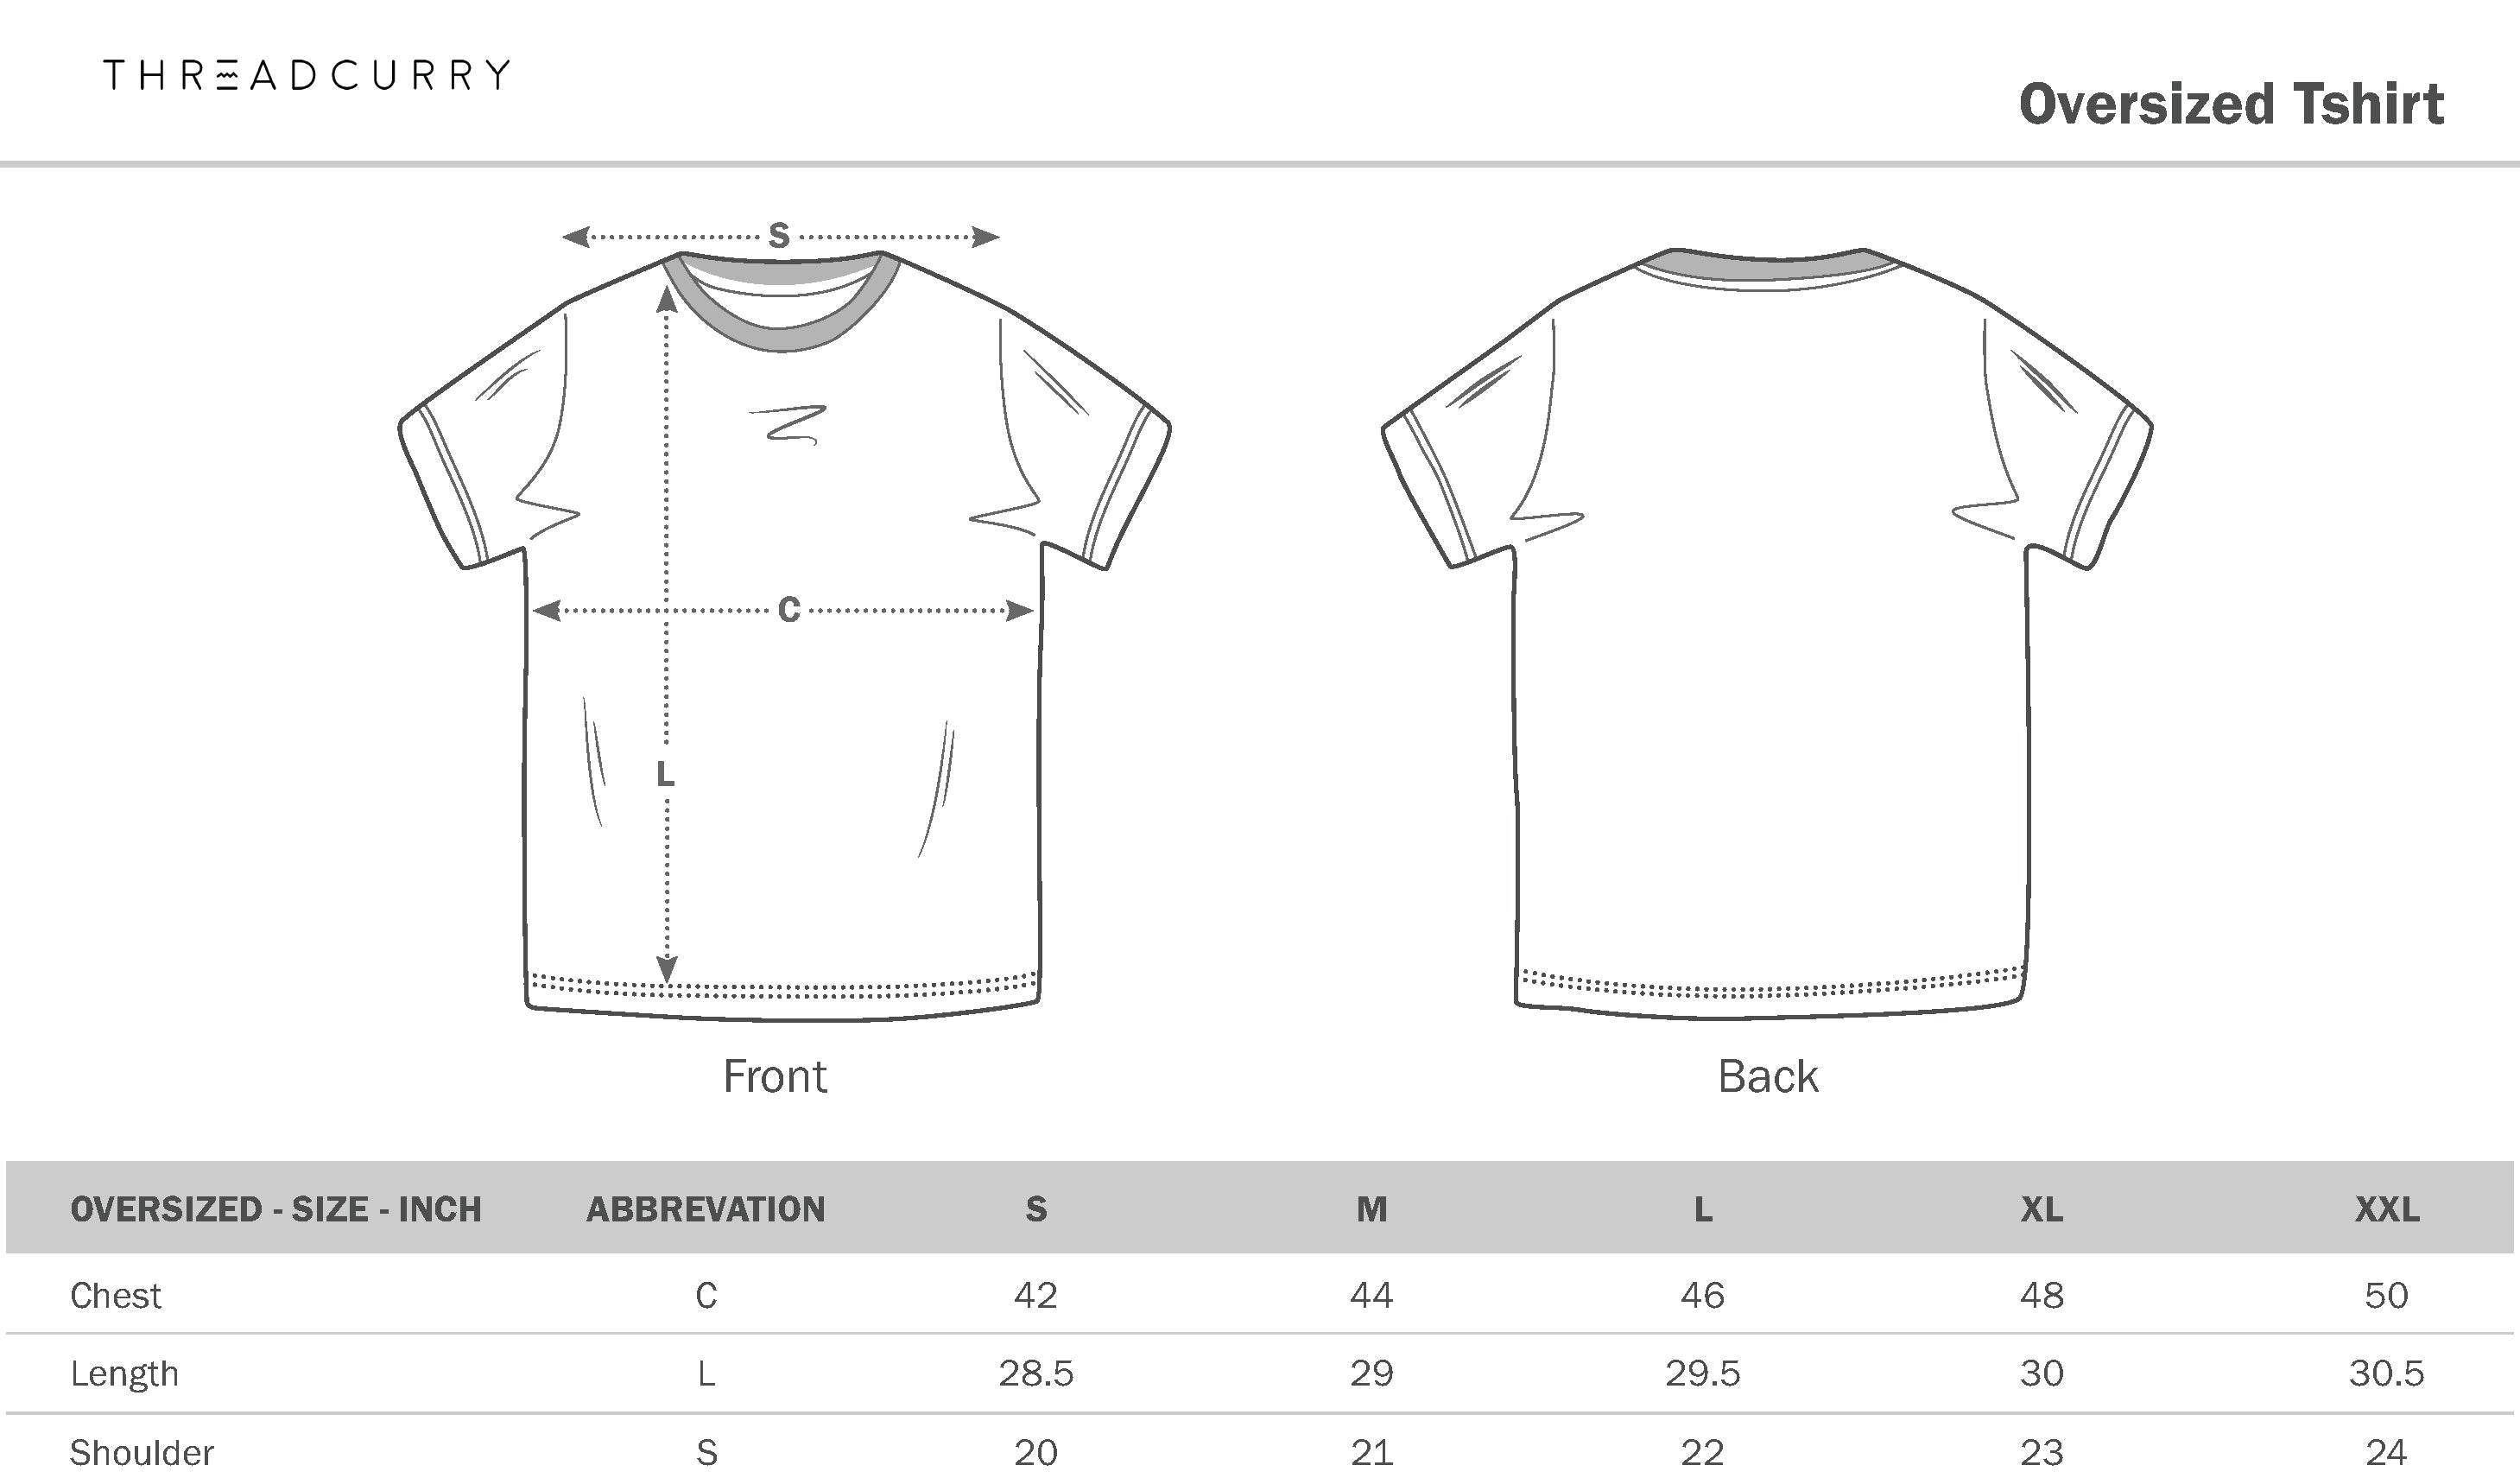 THREADCURRY T-shirt Size Chart